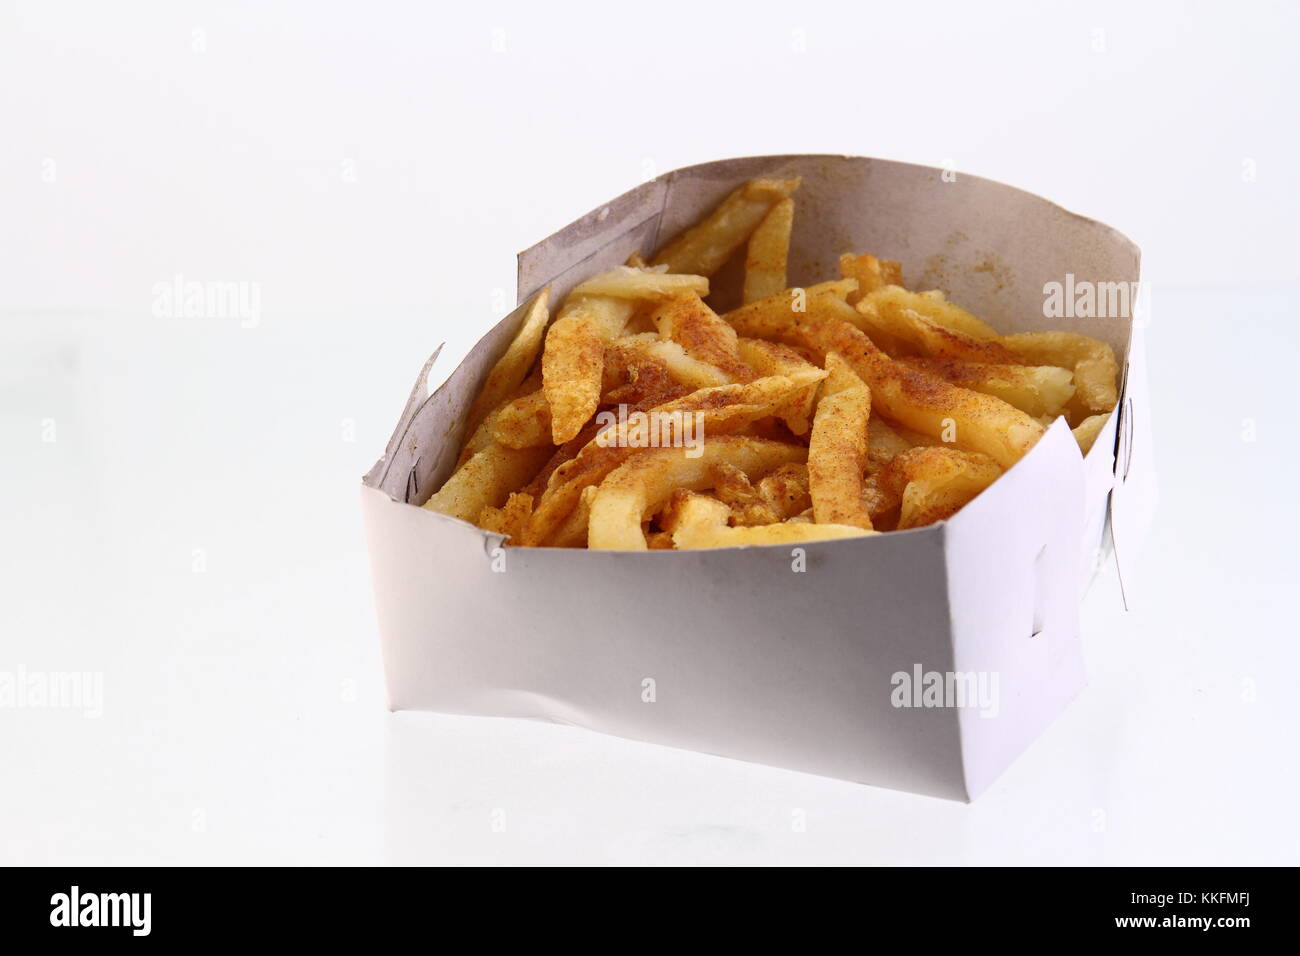 Slap tjips ist eine Südafrikanische umgangssprachlicher Ausdruck für Pommes frites oder frittierten Kartoffelchips Bild auf weißem Hintergrund im Querformat mit Kopie Raum Stockfoto